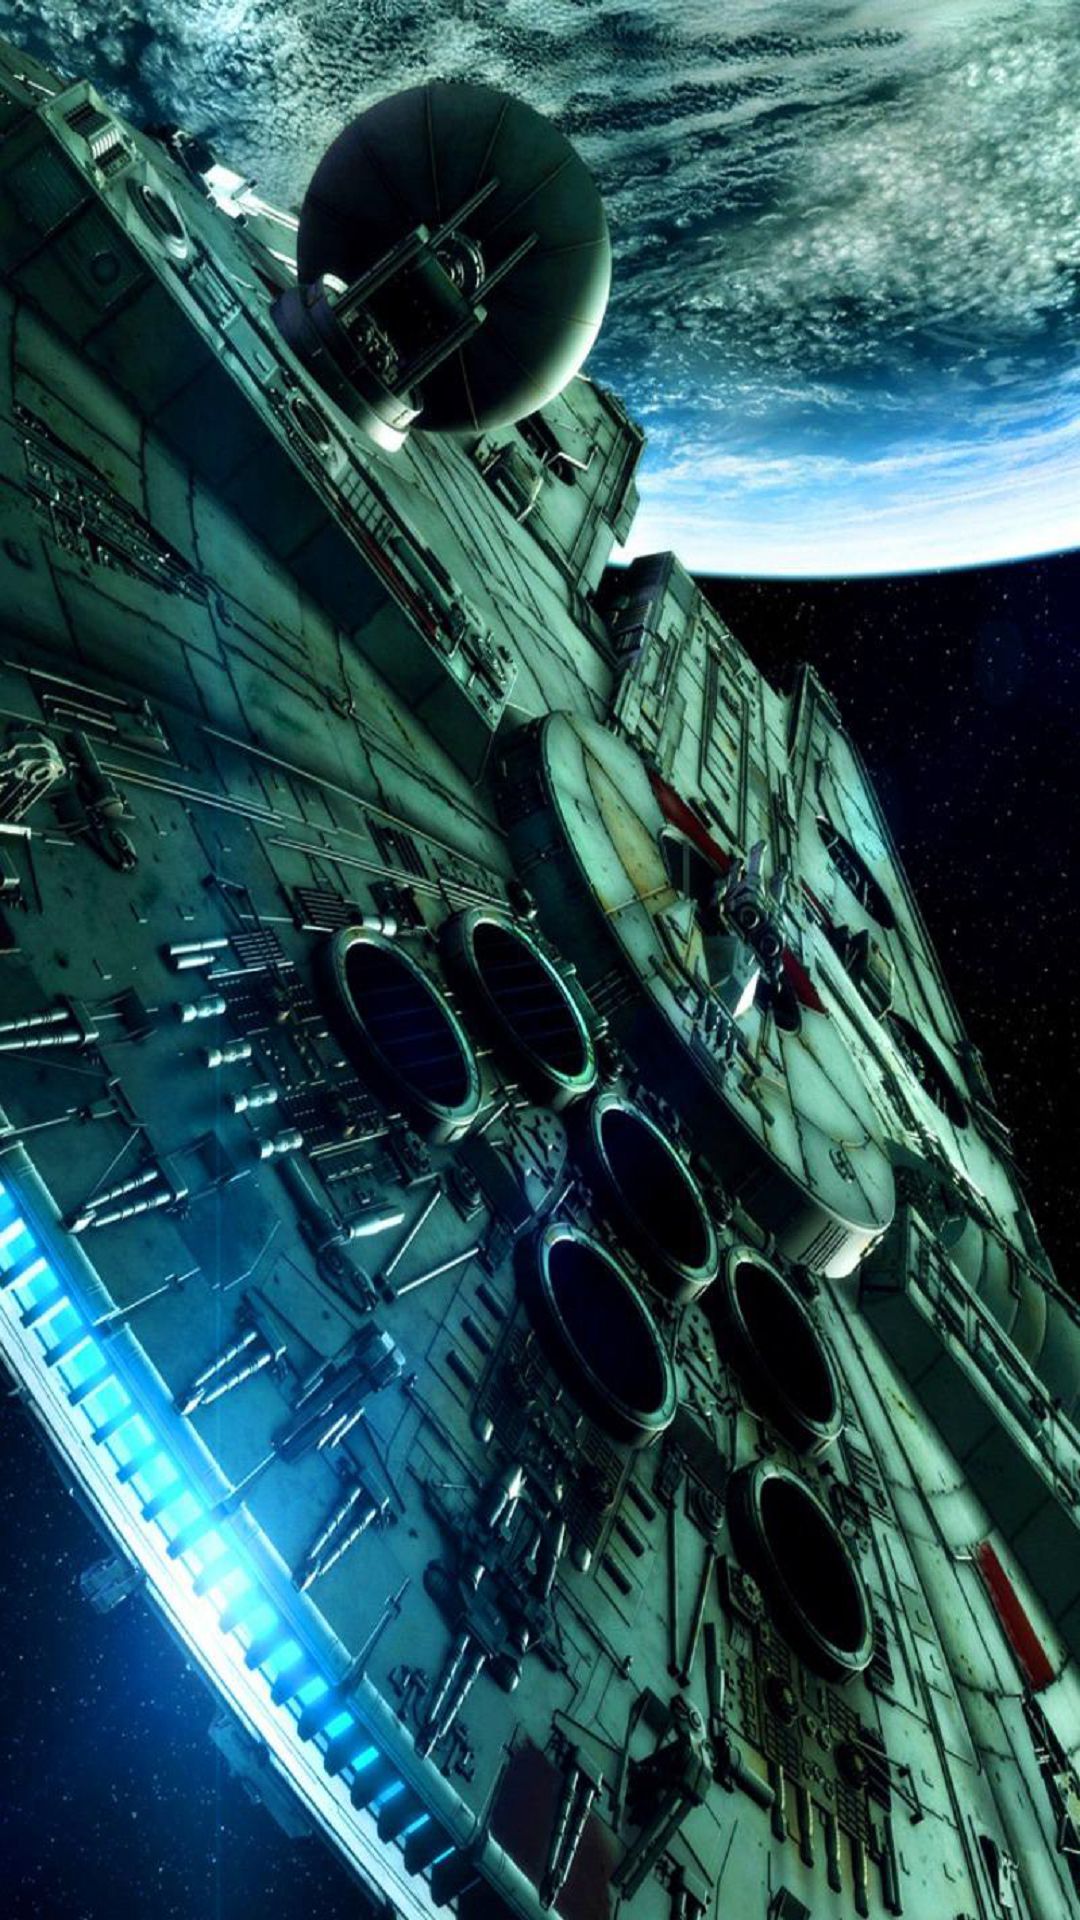 Star Wars Spaceship Science Fiction iPhone Plus HD Wallpaper Jpg